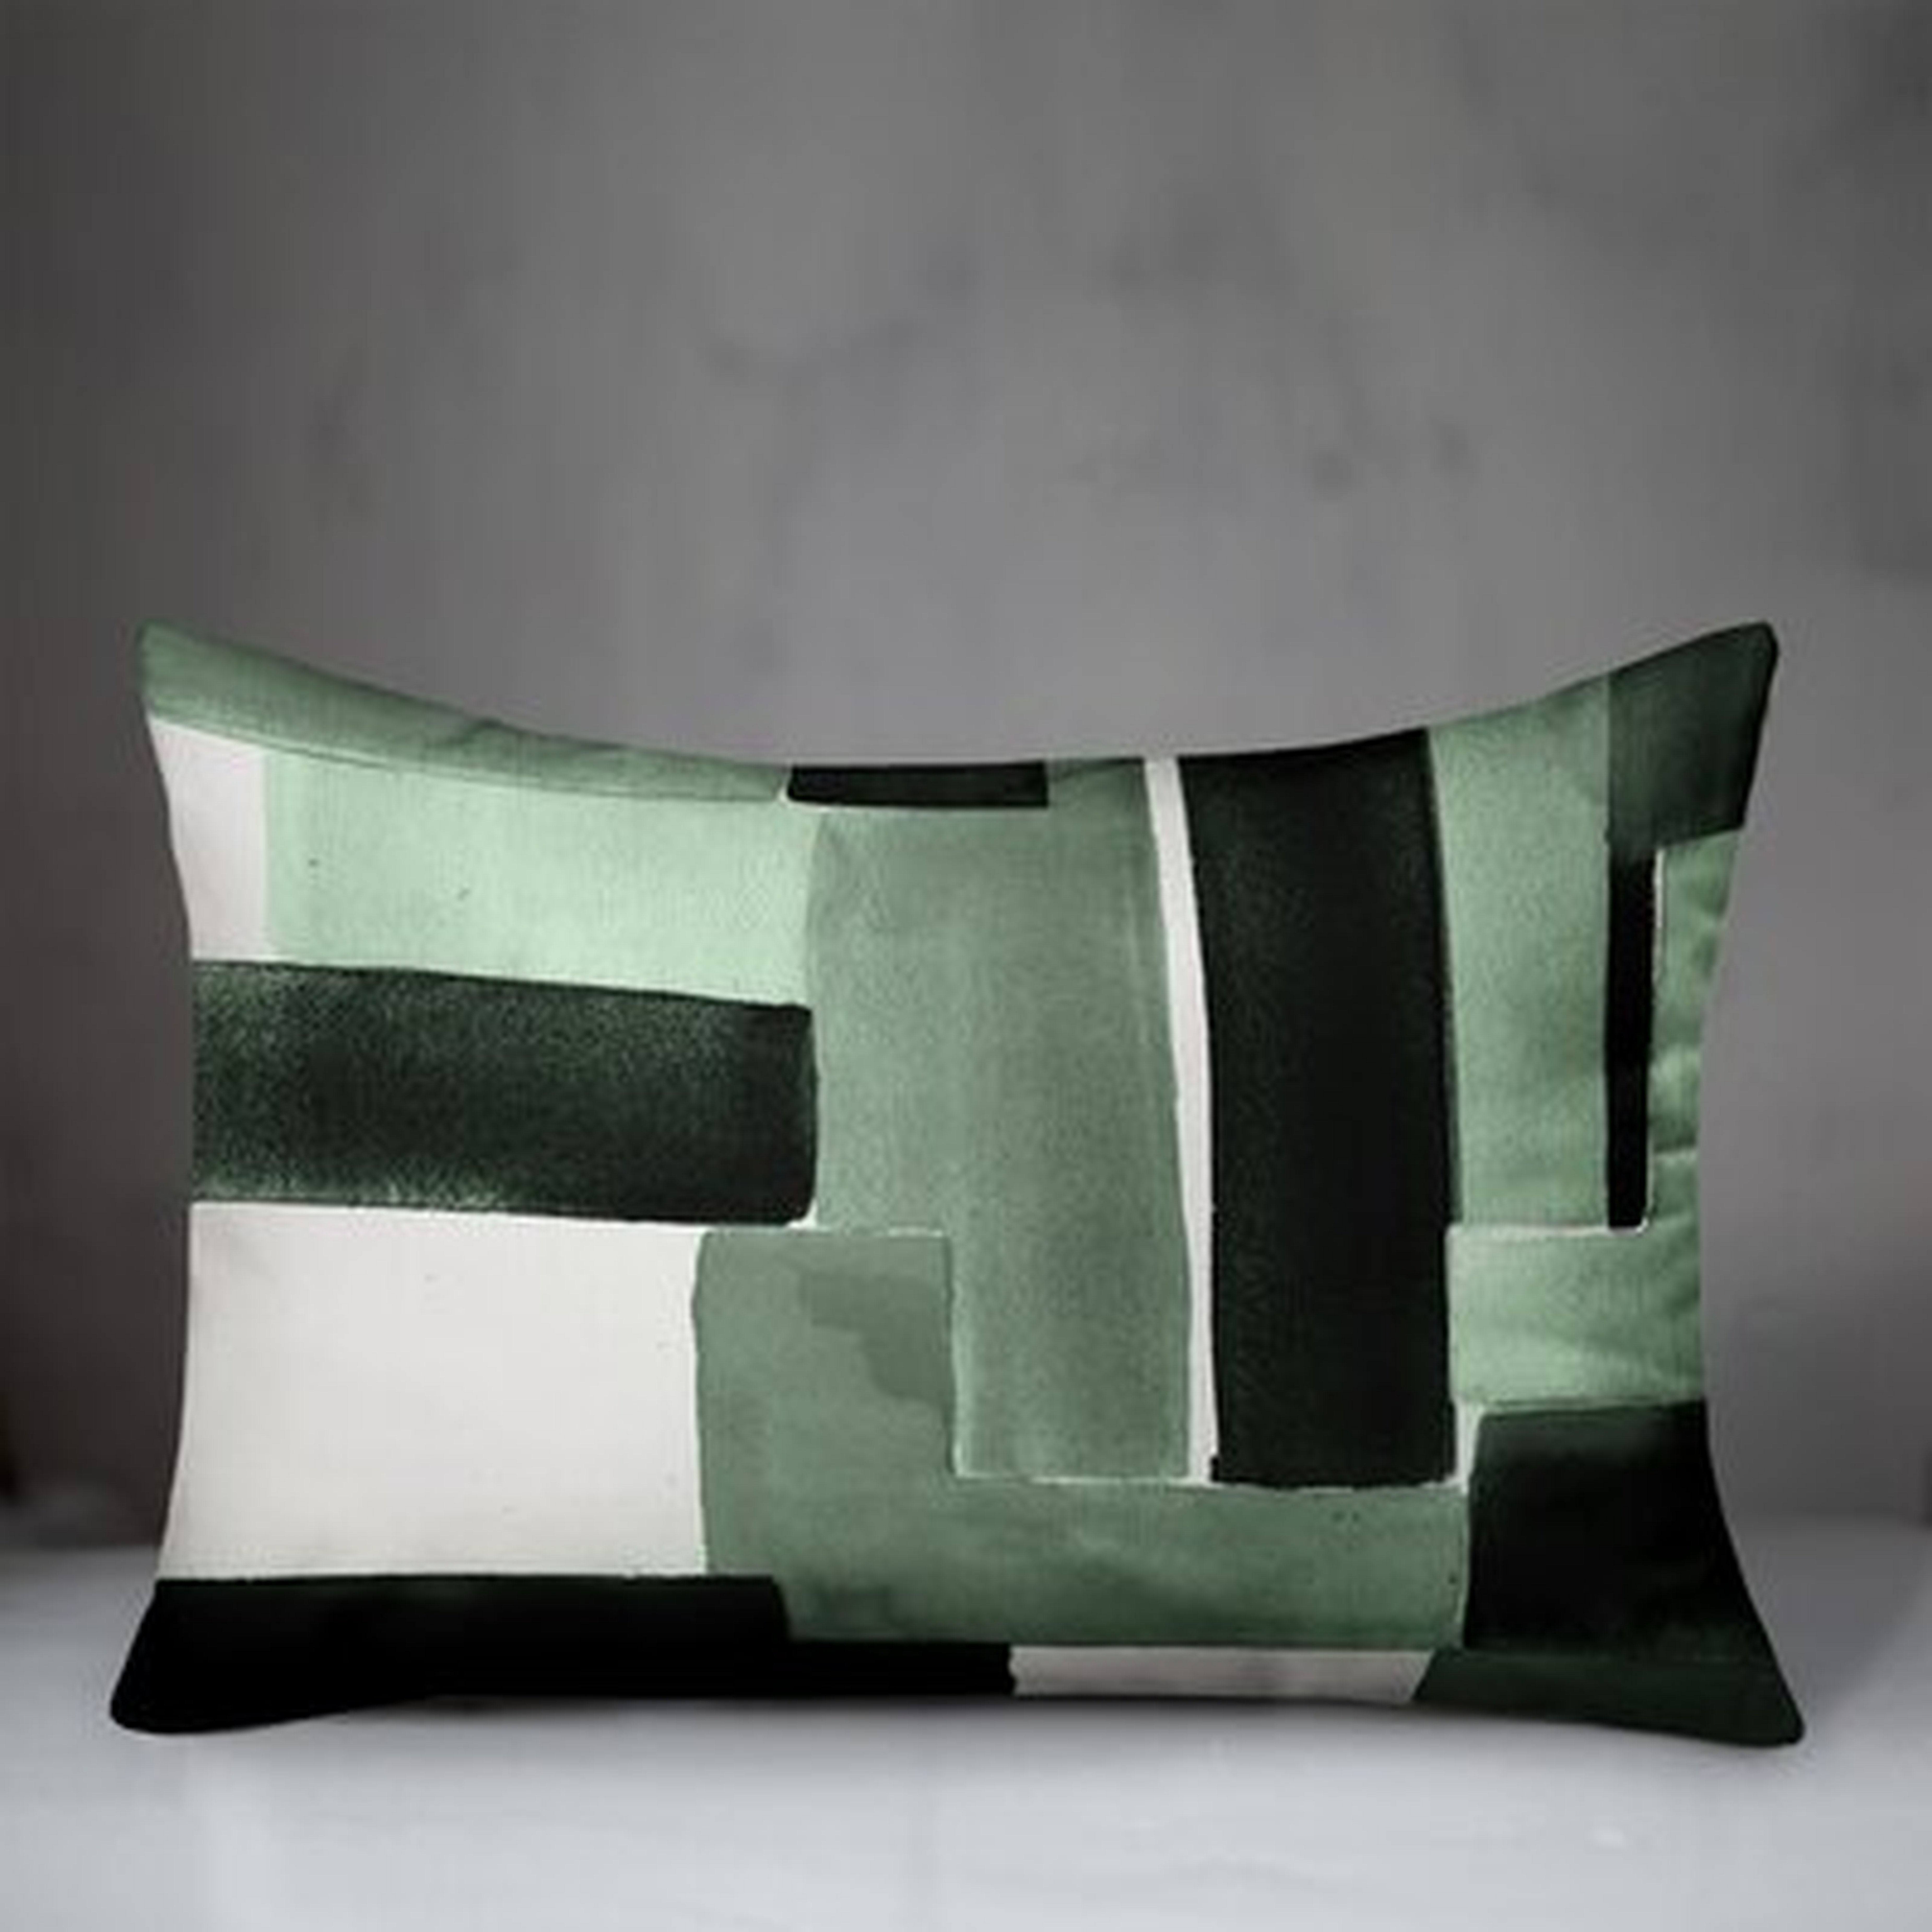 Emron Outdoor Rectangular Pillow Cover & Insert - Wayfair